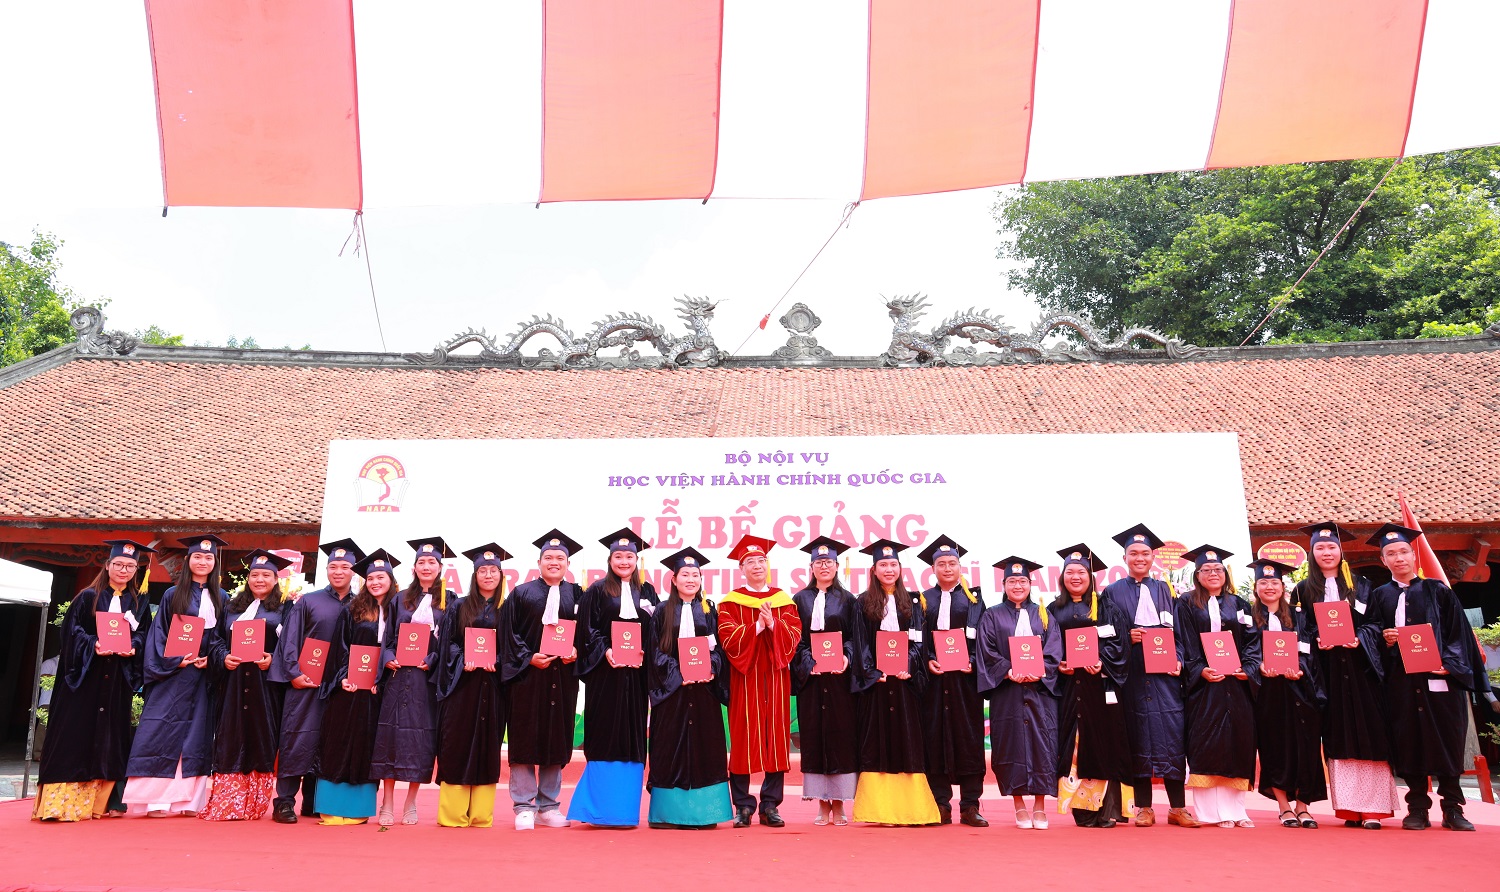 PGS.TS. Lương Thanh Cường, Phó Bí thư Đảng ủy, Phó Giám đốc Học viện Hành chính Quốc gia trao bằng tốt nghiệp tới các Tân Thạc sĩ.